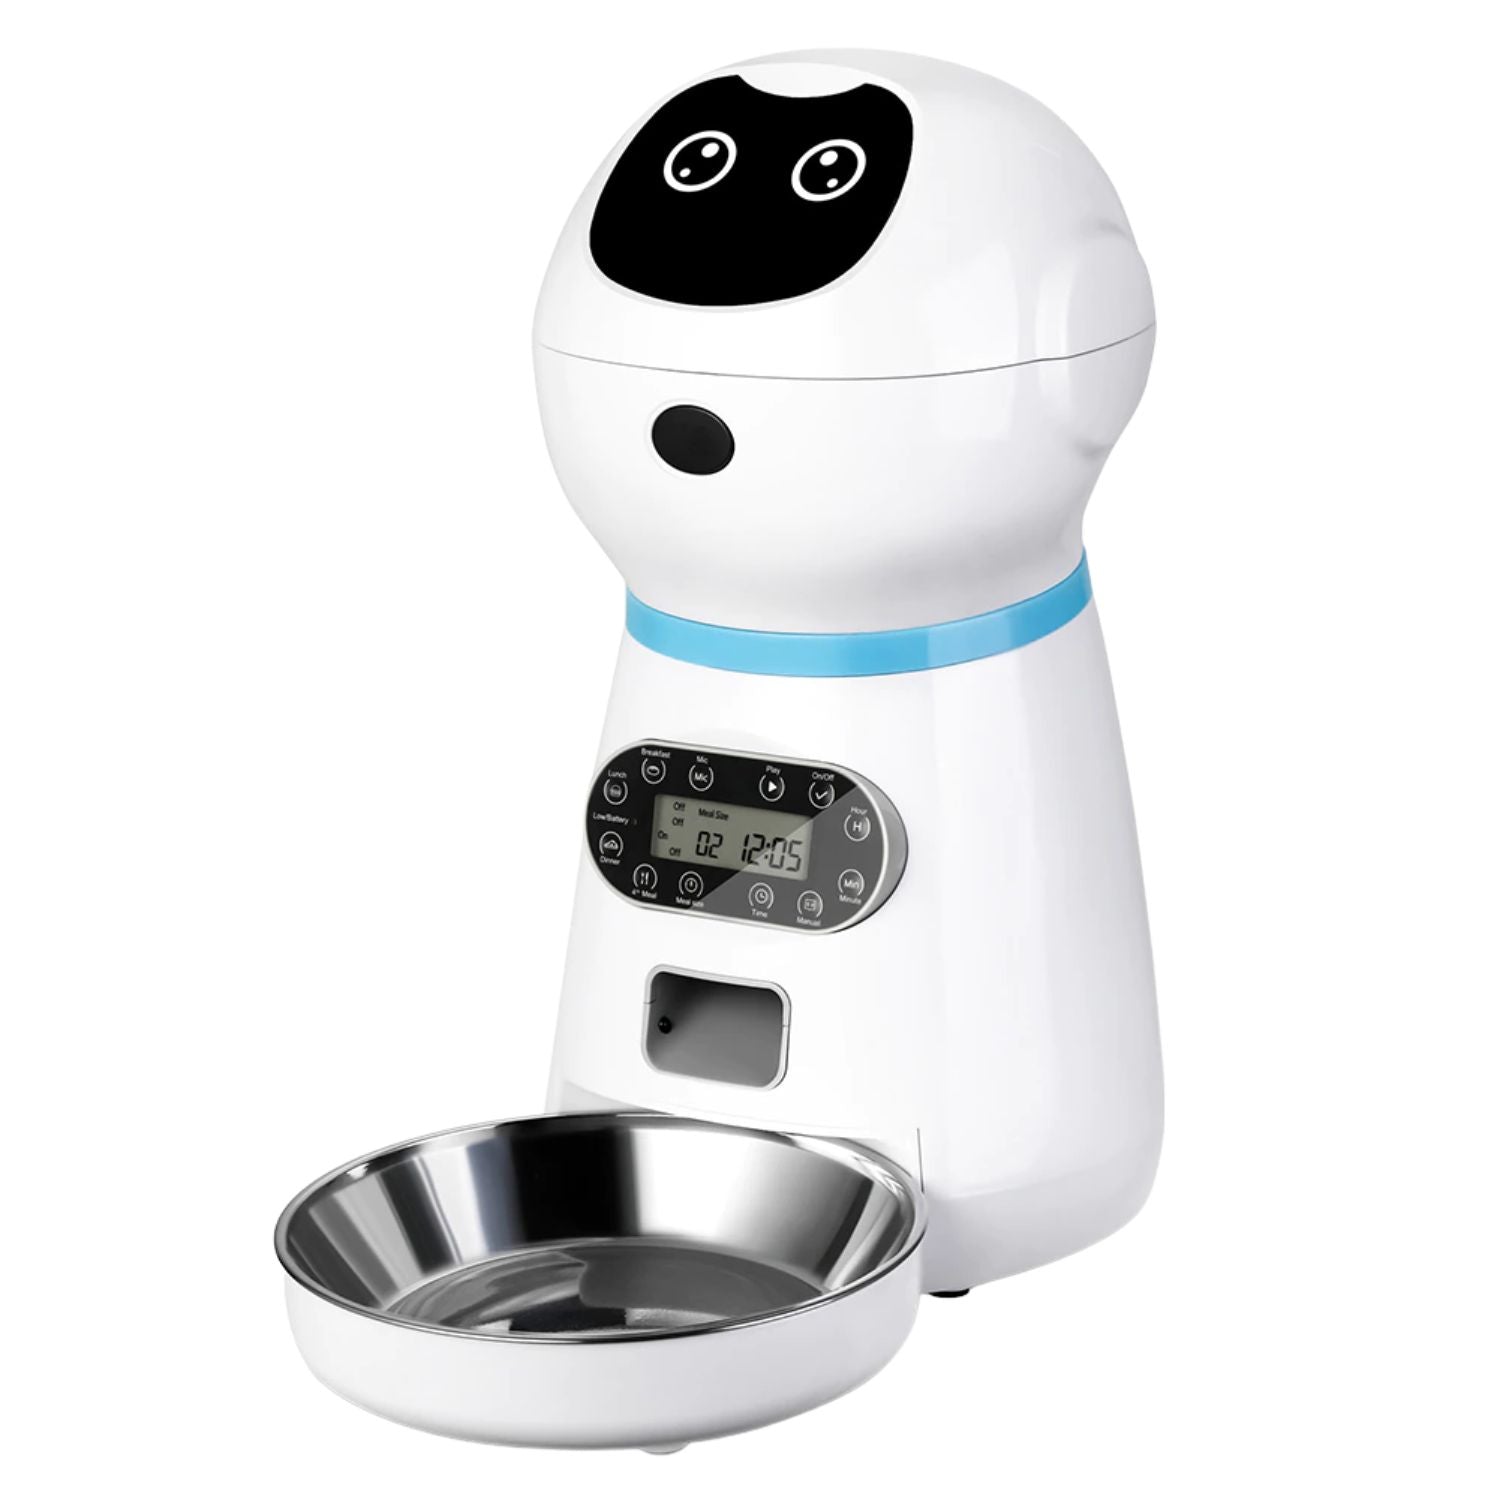 Cuatro robots de cocina infantiles para ayudarte con las comidas